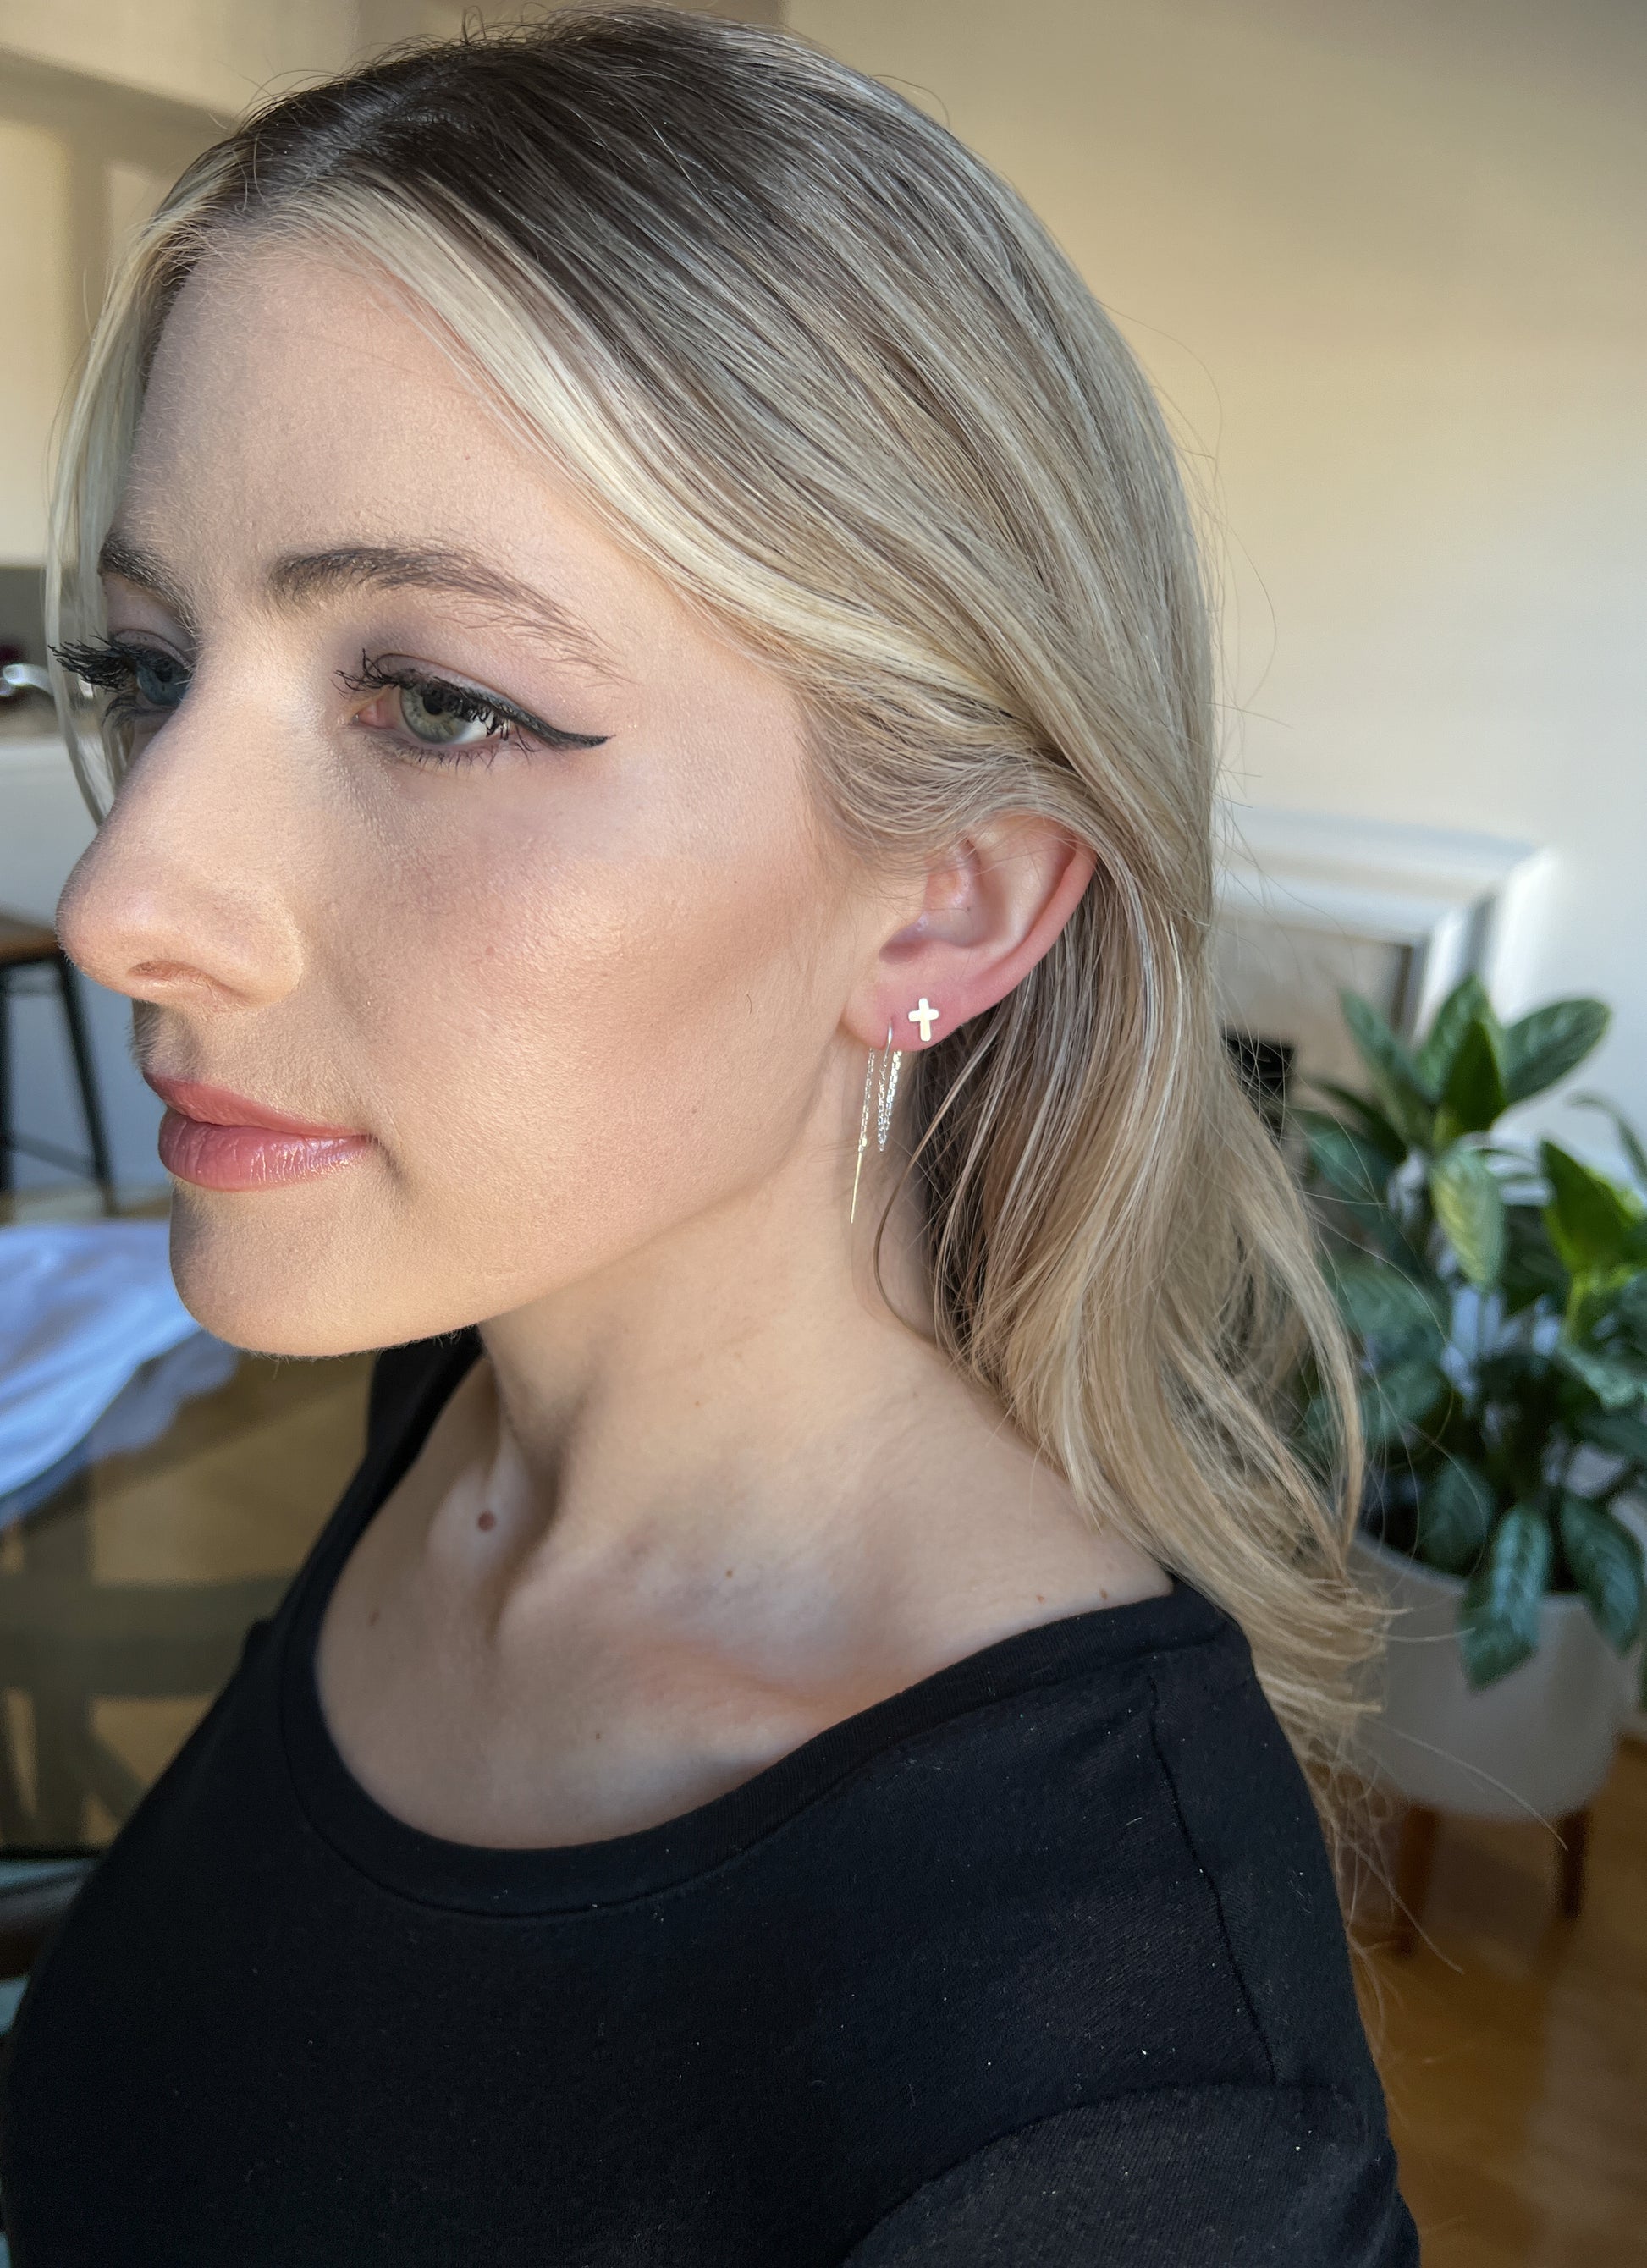 double earrings for two hole ear piercings